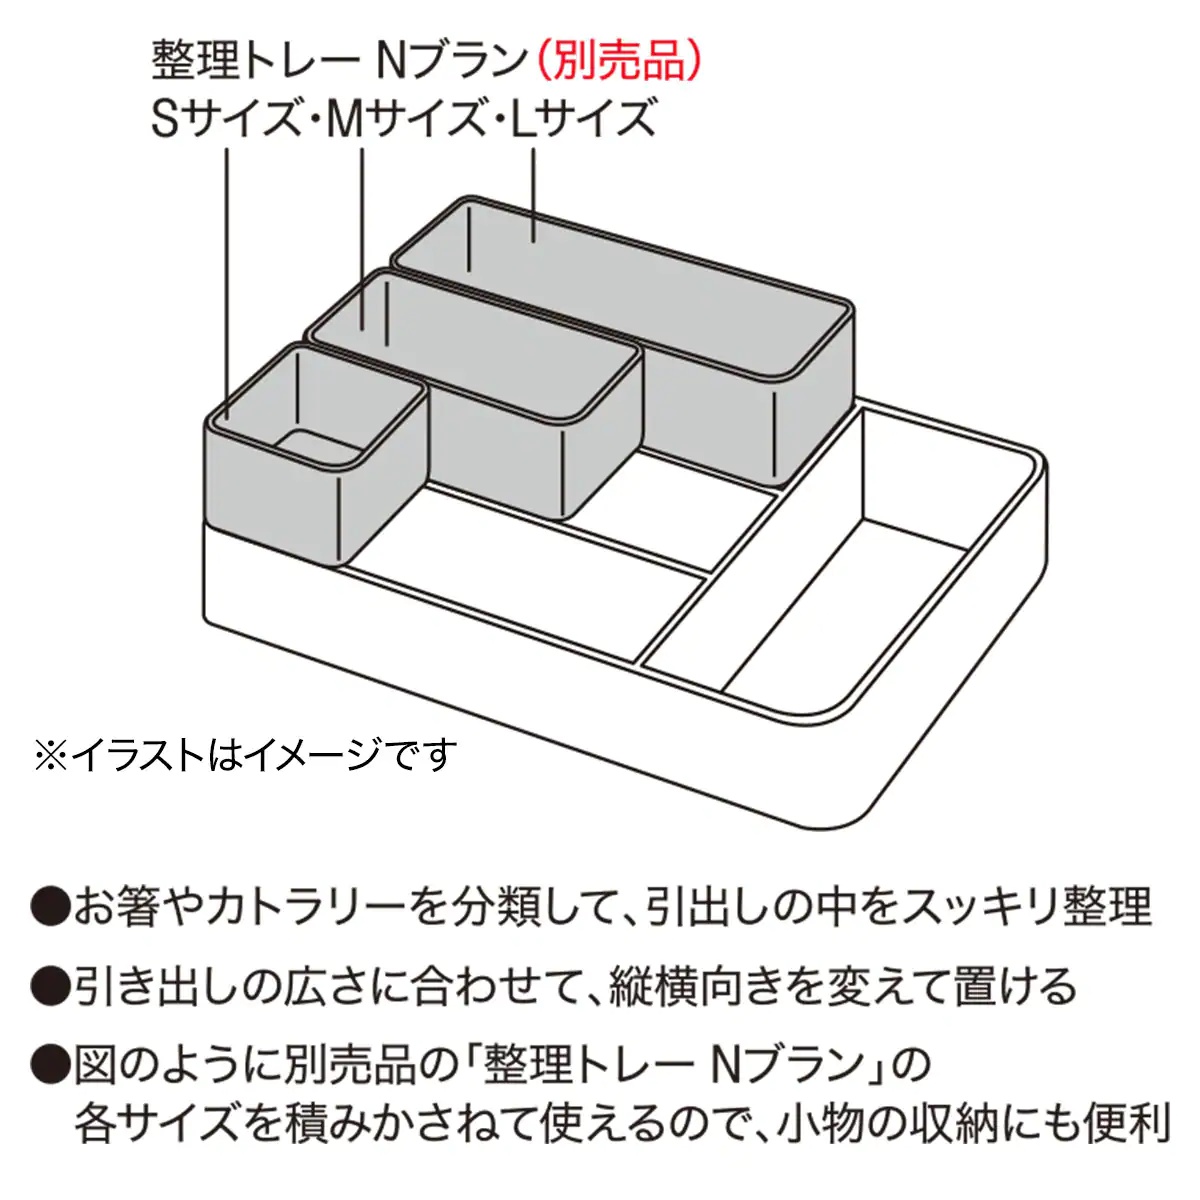 NITORI(ニトリ) 積み重ねが出来るカラトリートレーの商品画像サムネ10 